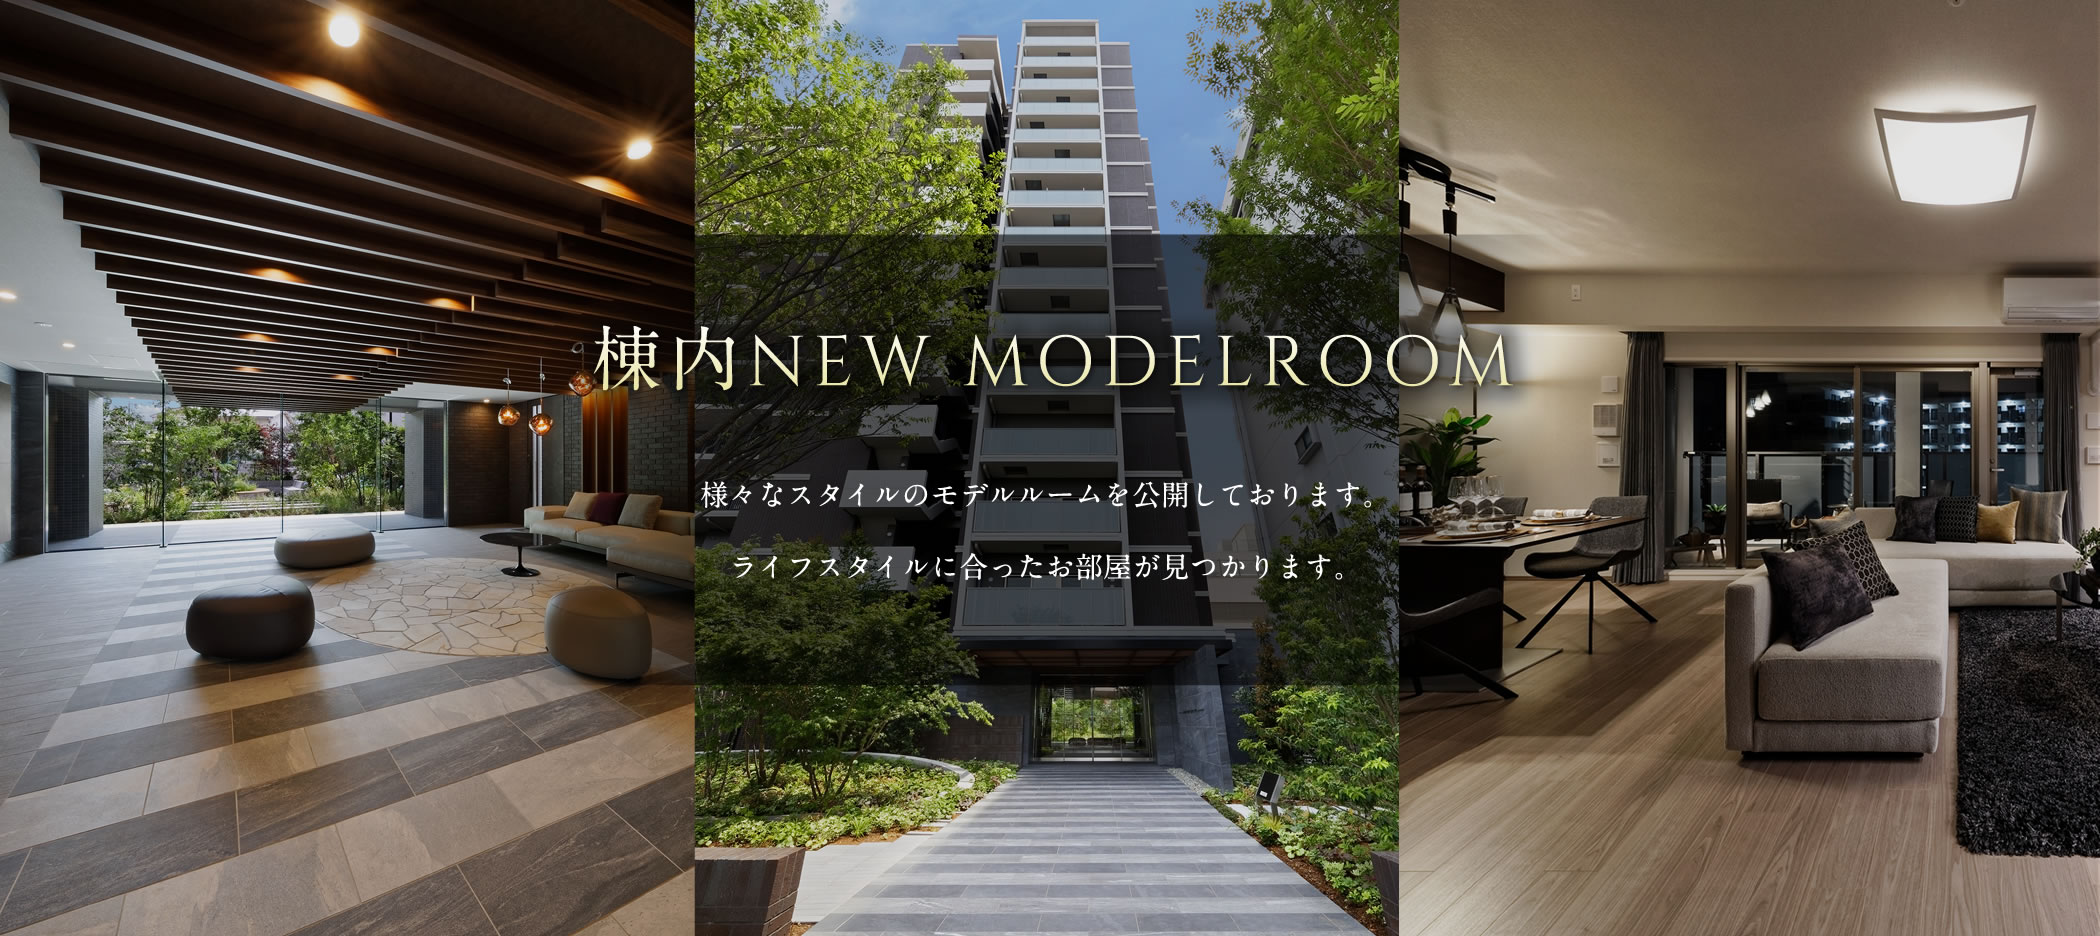 棟内NEW MODELROOM 様々なスタイルのモデルルームを公開しております。ライフスタイルに合ったお部屋が見つかります。